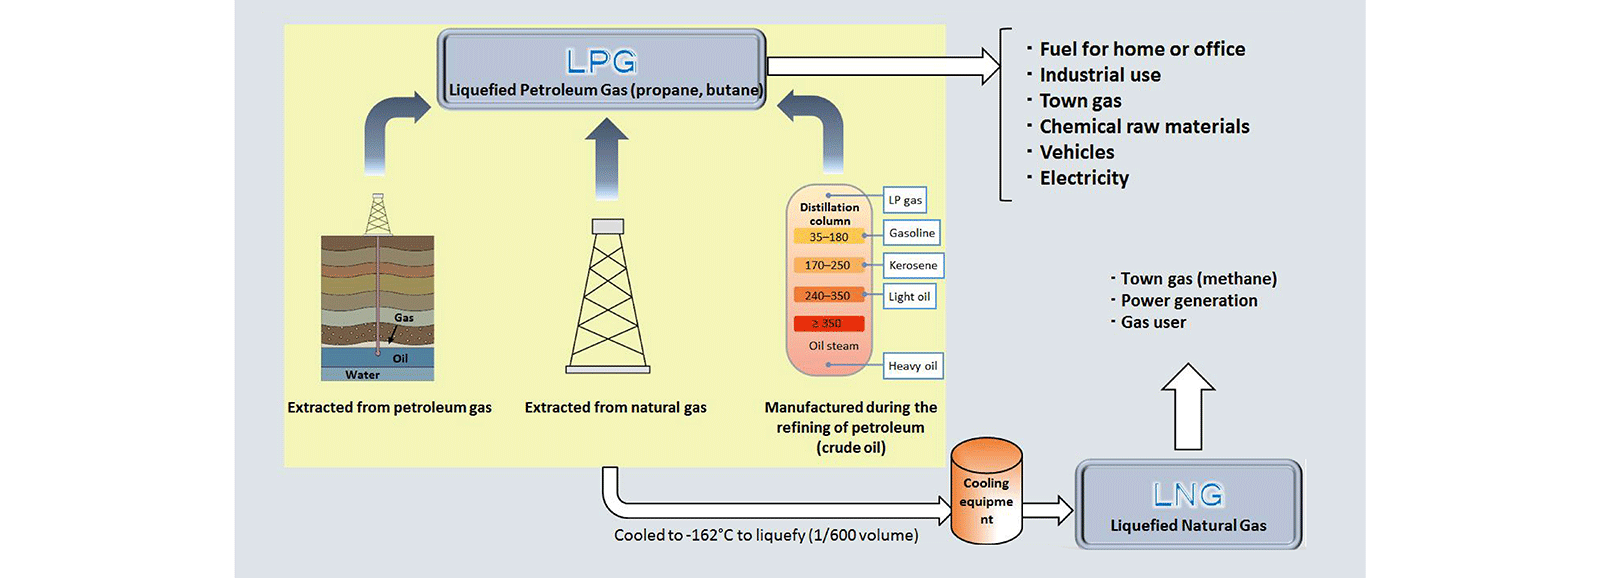 Sıvılaştırılmış doğal gaz (LNG) - Sıvılaştırılmış petrol gazı (LPG)